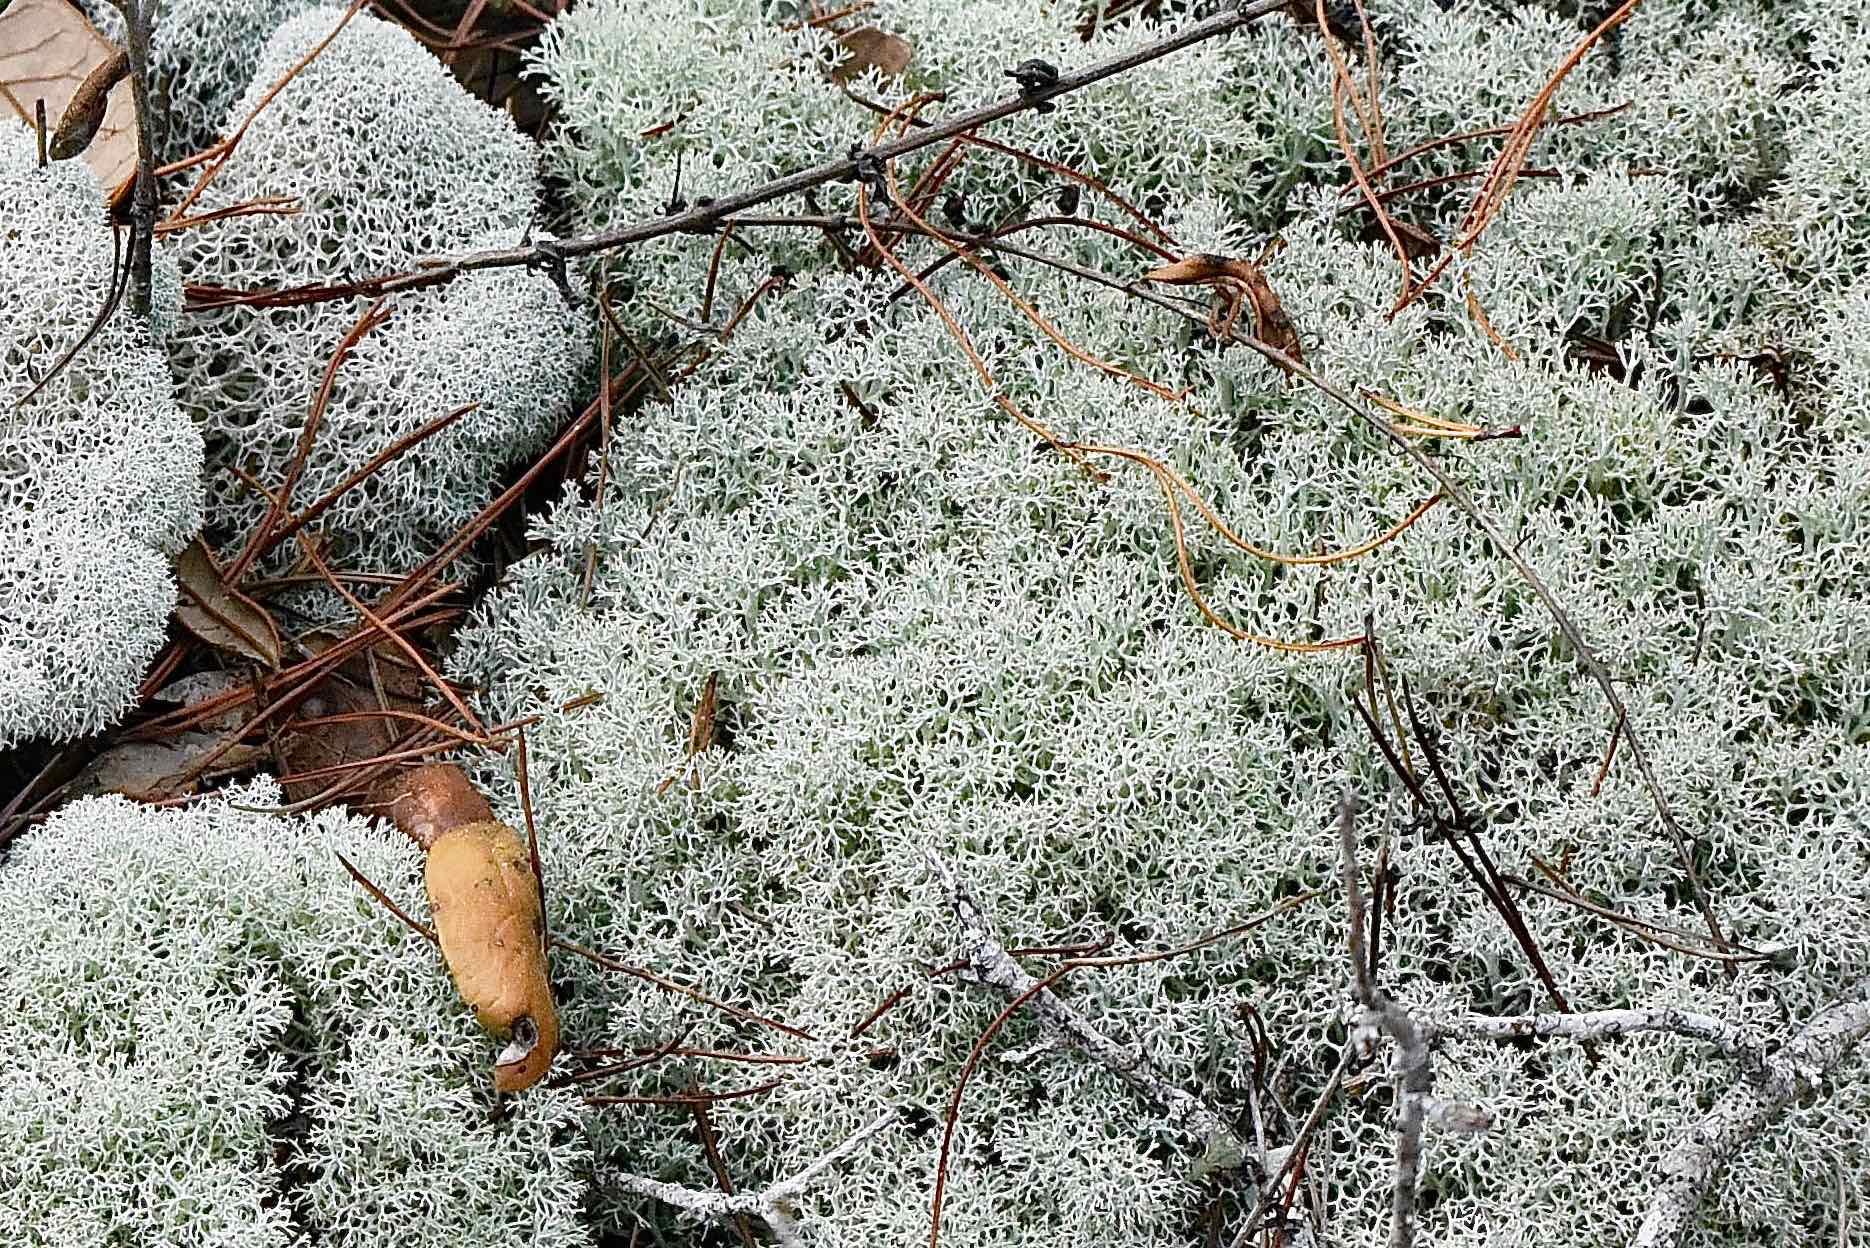 Powderpuff lichen